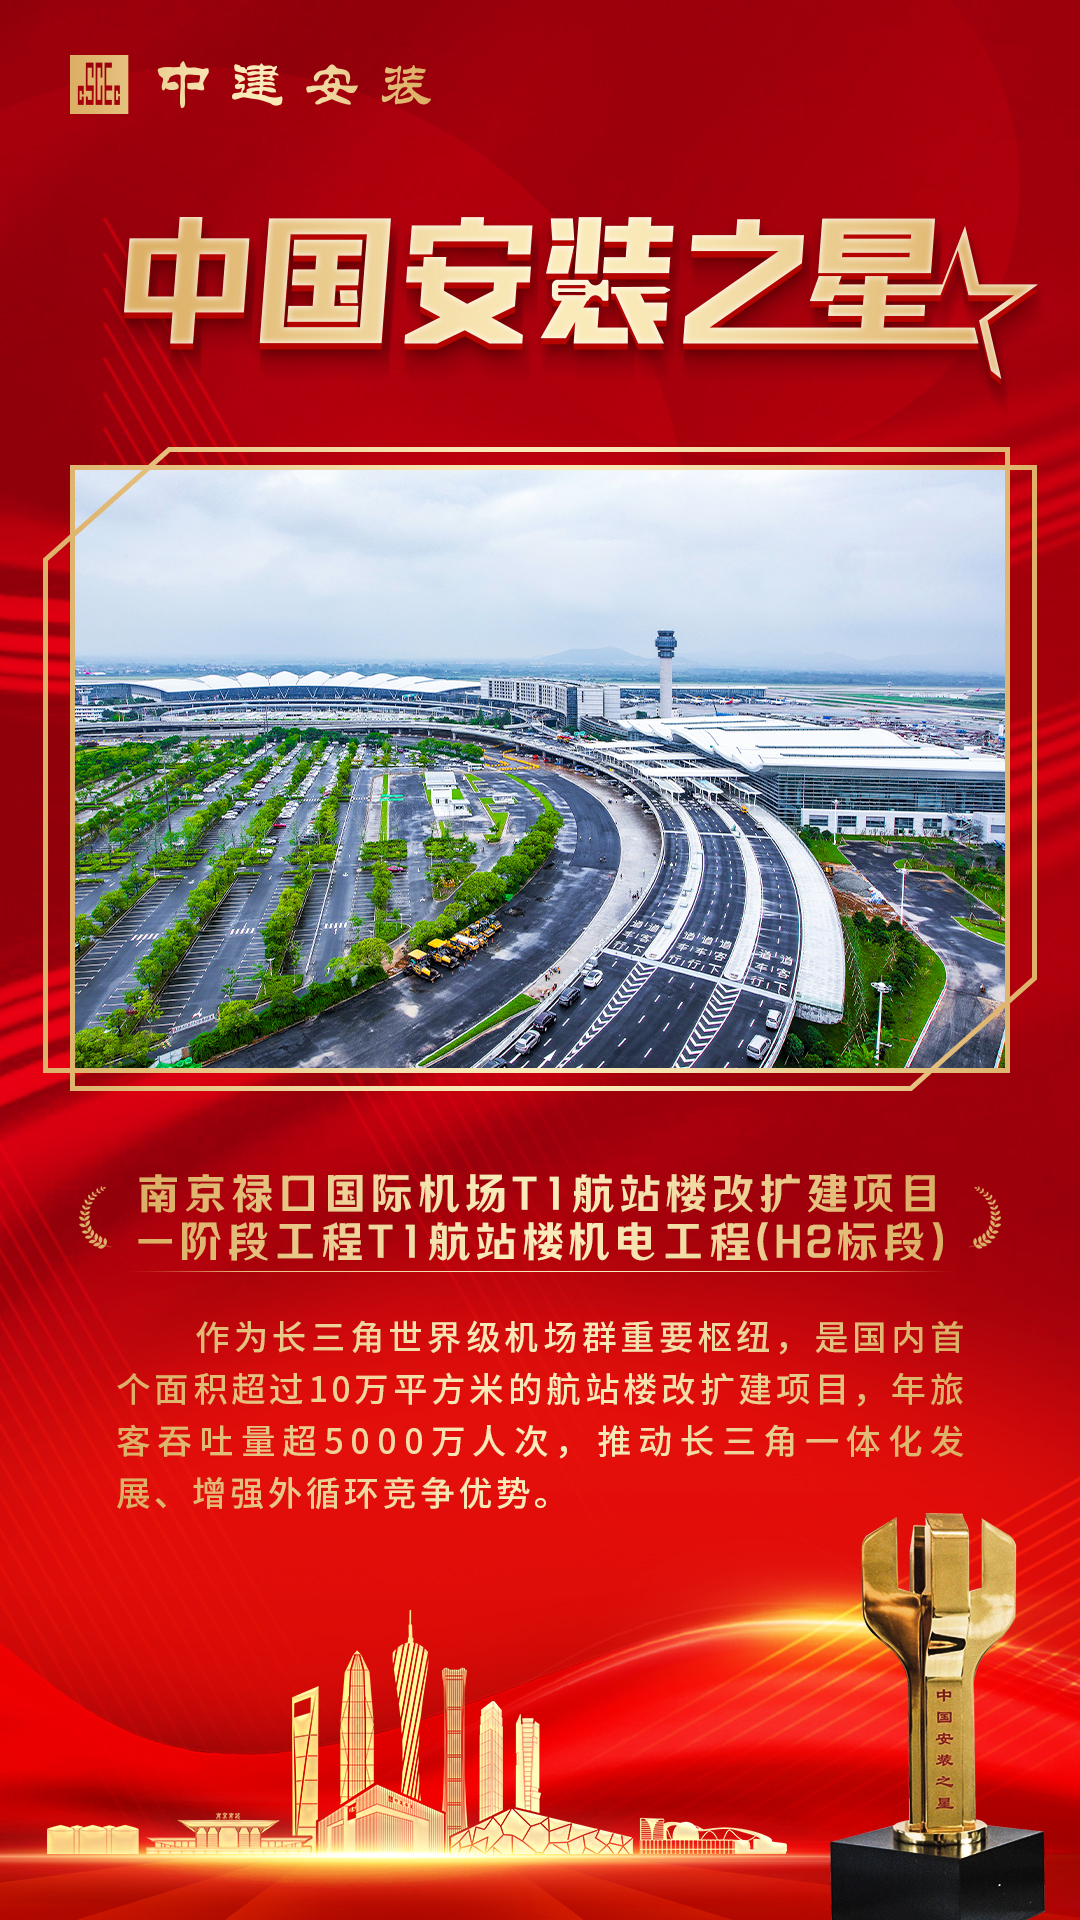 南京禄口国际机场.jpg